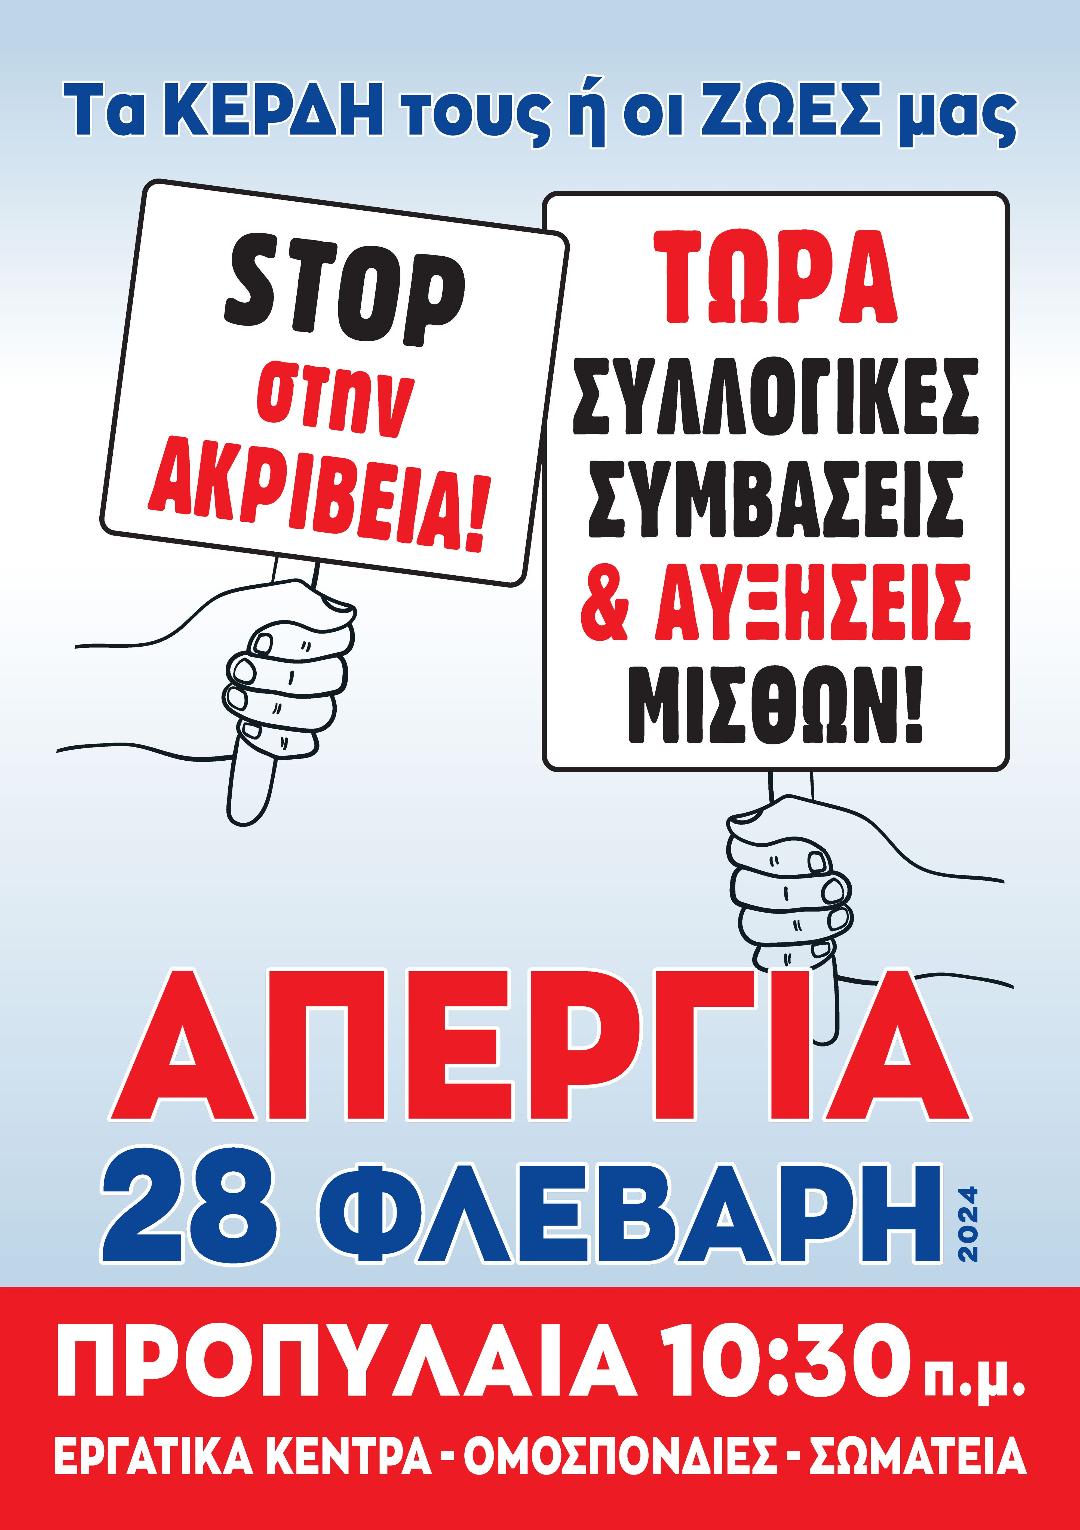 ΠΑΜΕ: Απεργιακή συγκέντρωση στην Αθήνα στις 28 Φεβρουαρίου στα Προπύλαια